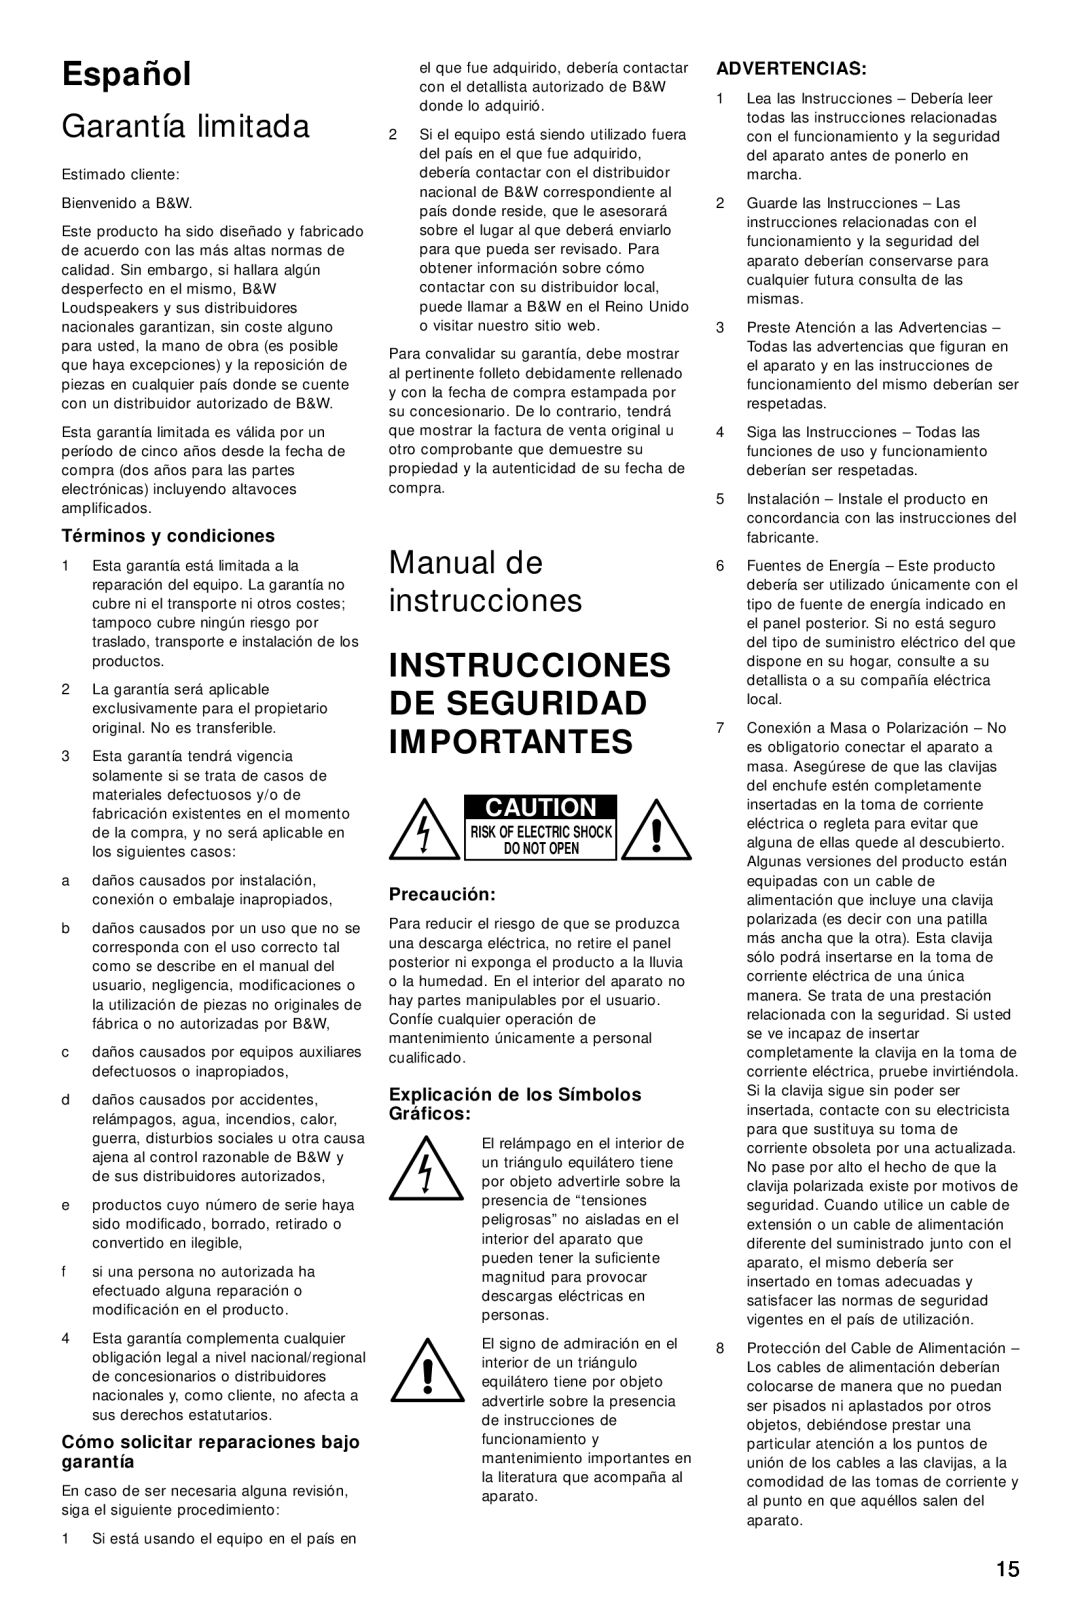 Bowers & Wilkins ASW850 Español, Garantía limitada, Manual de instrucciones, Instrucciones De Seguridad Importantes 